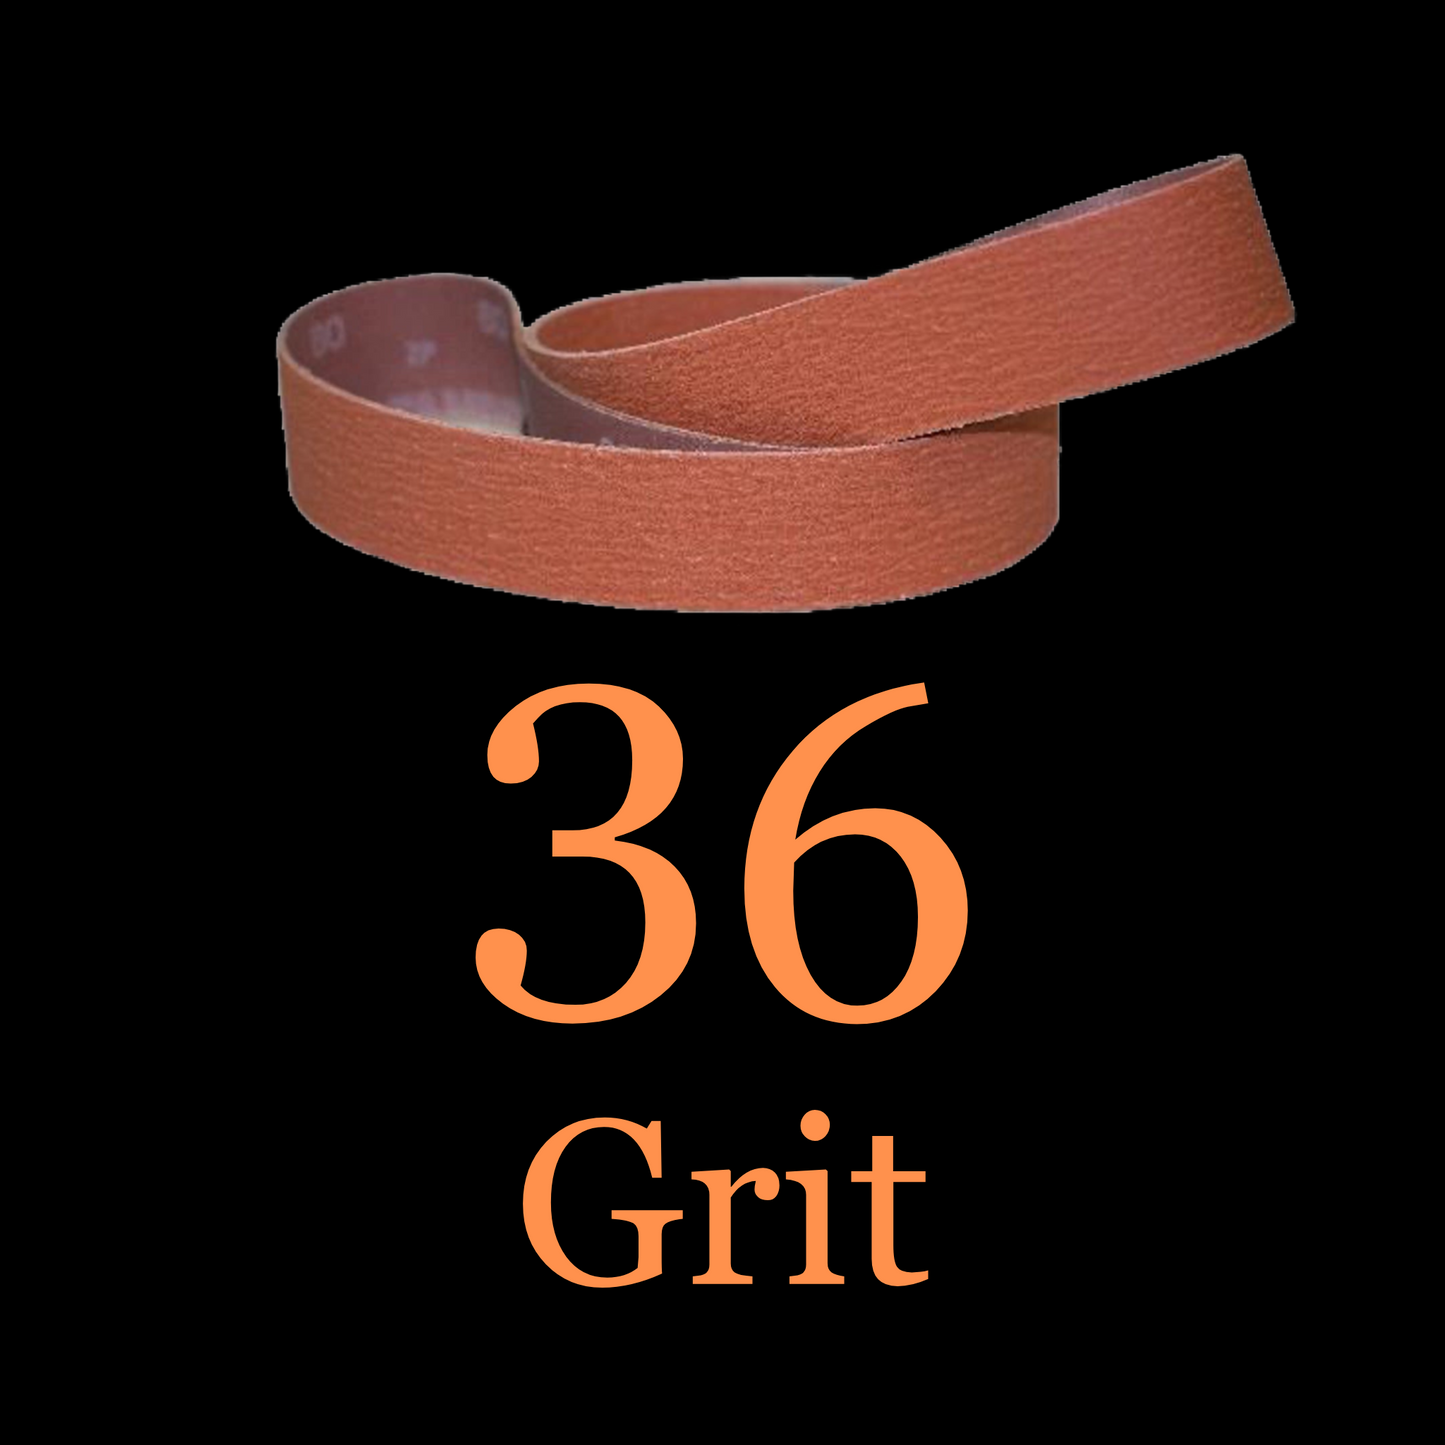 2” x 48” Ceramic Blaze Grinder Belt 36 Grit